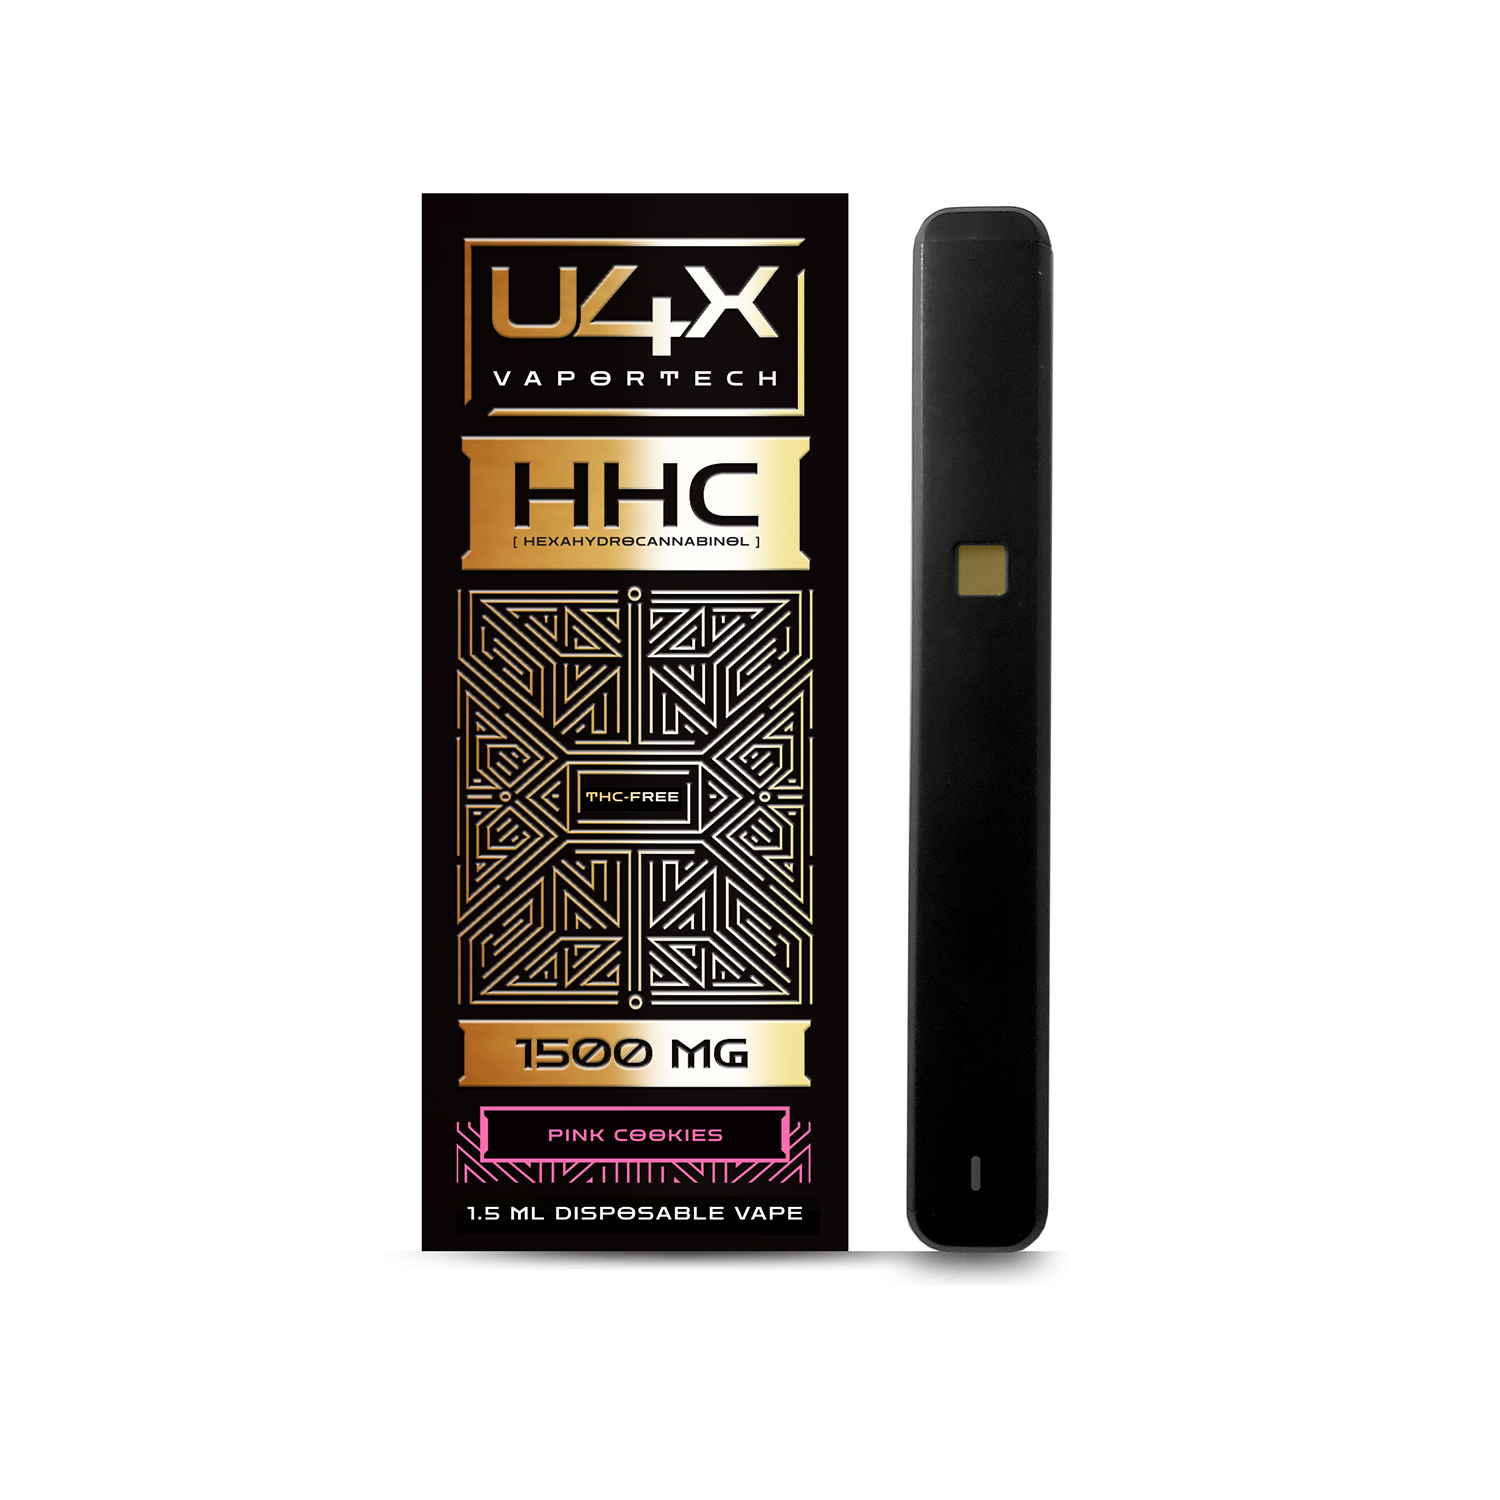 U4X 1500 mg HHC Disposable Vape Pen - Pink Cookies